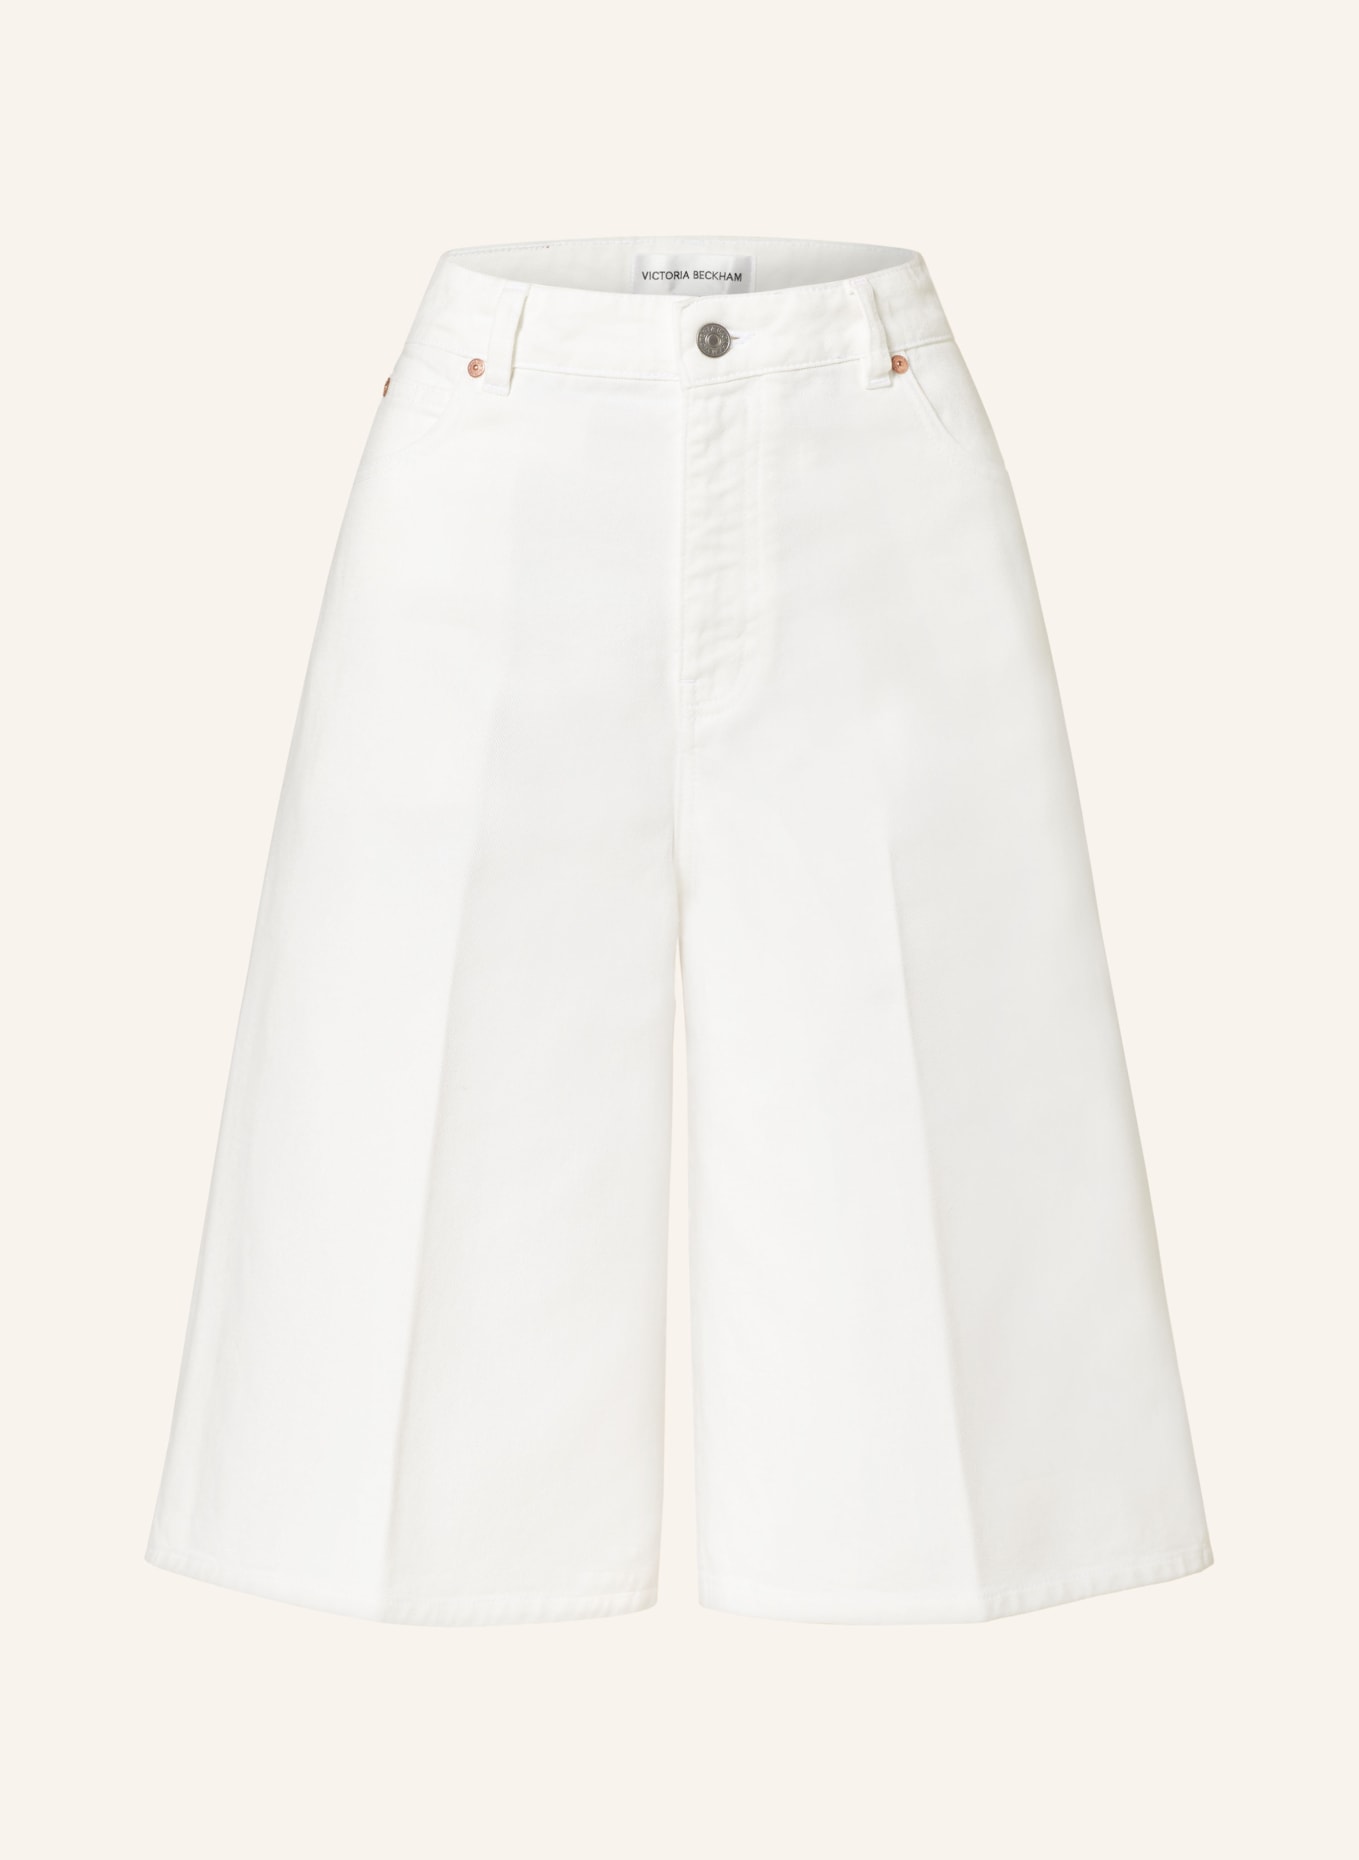 VICTORIABECKHAM Oversized denim shorts, Color: 8845 WASHED WHITE (Image 1)